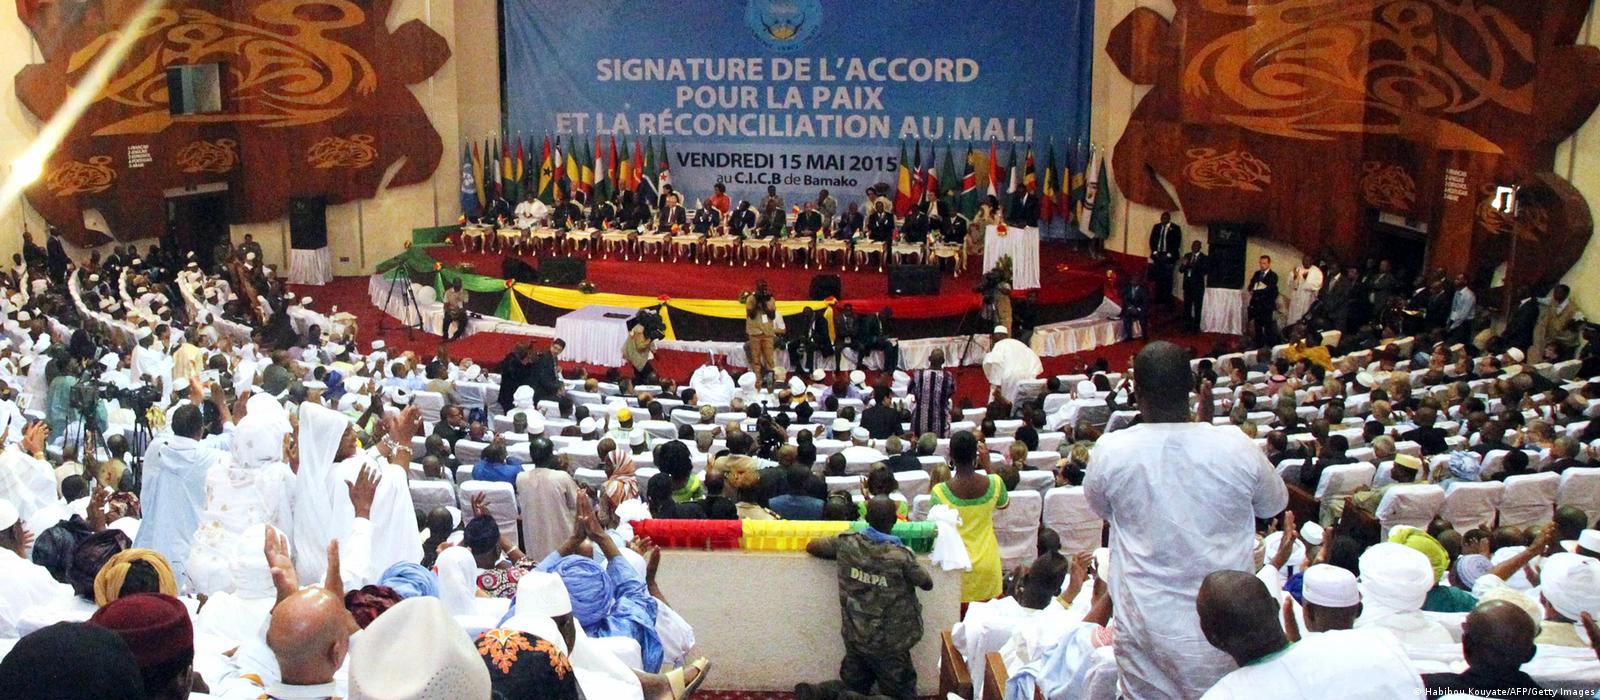 Le bras de fer inédit entre le Mali et l'Algérie : L'Accord d'Alger en péril